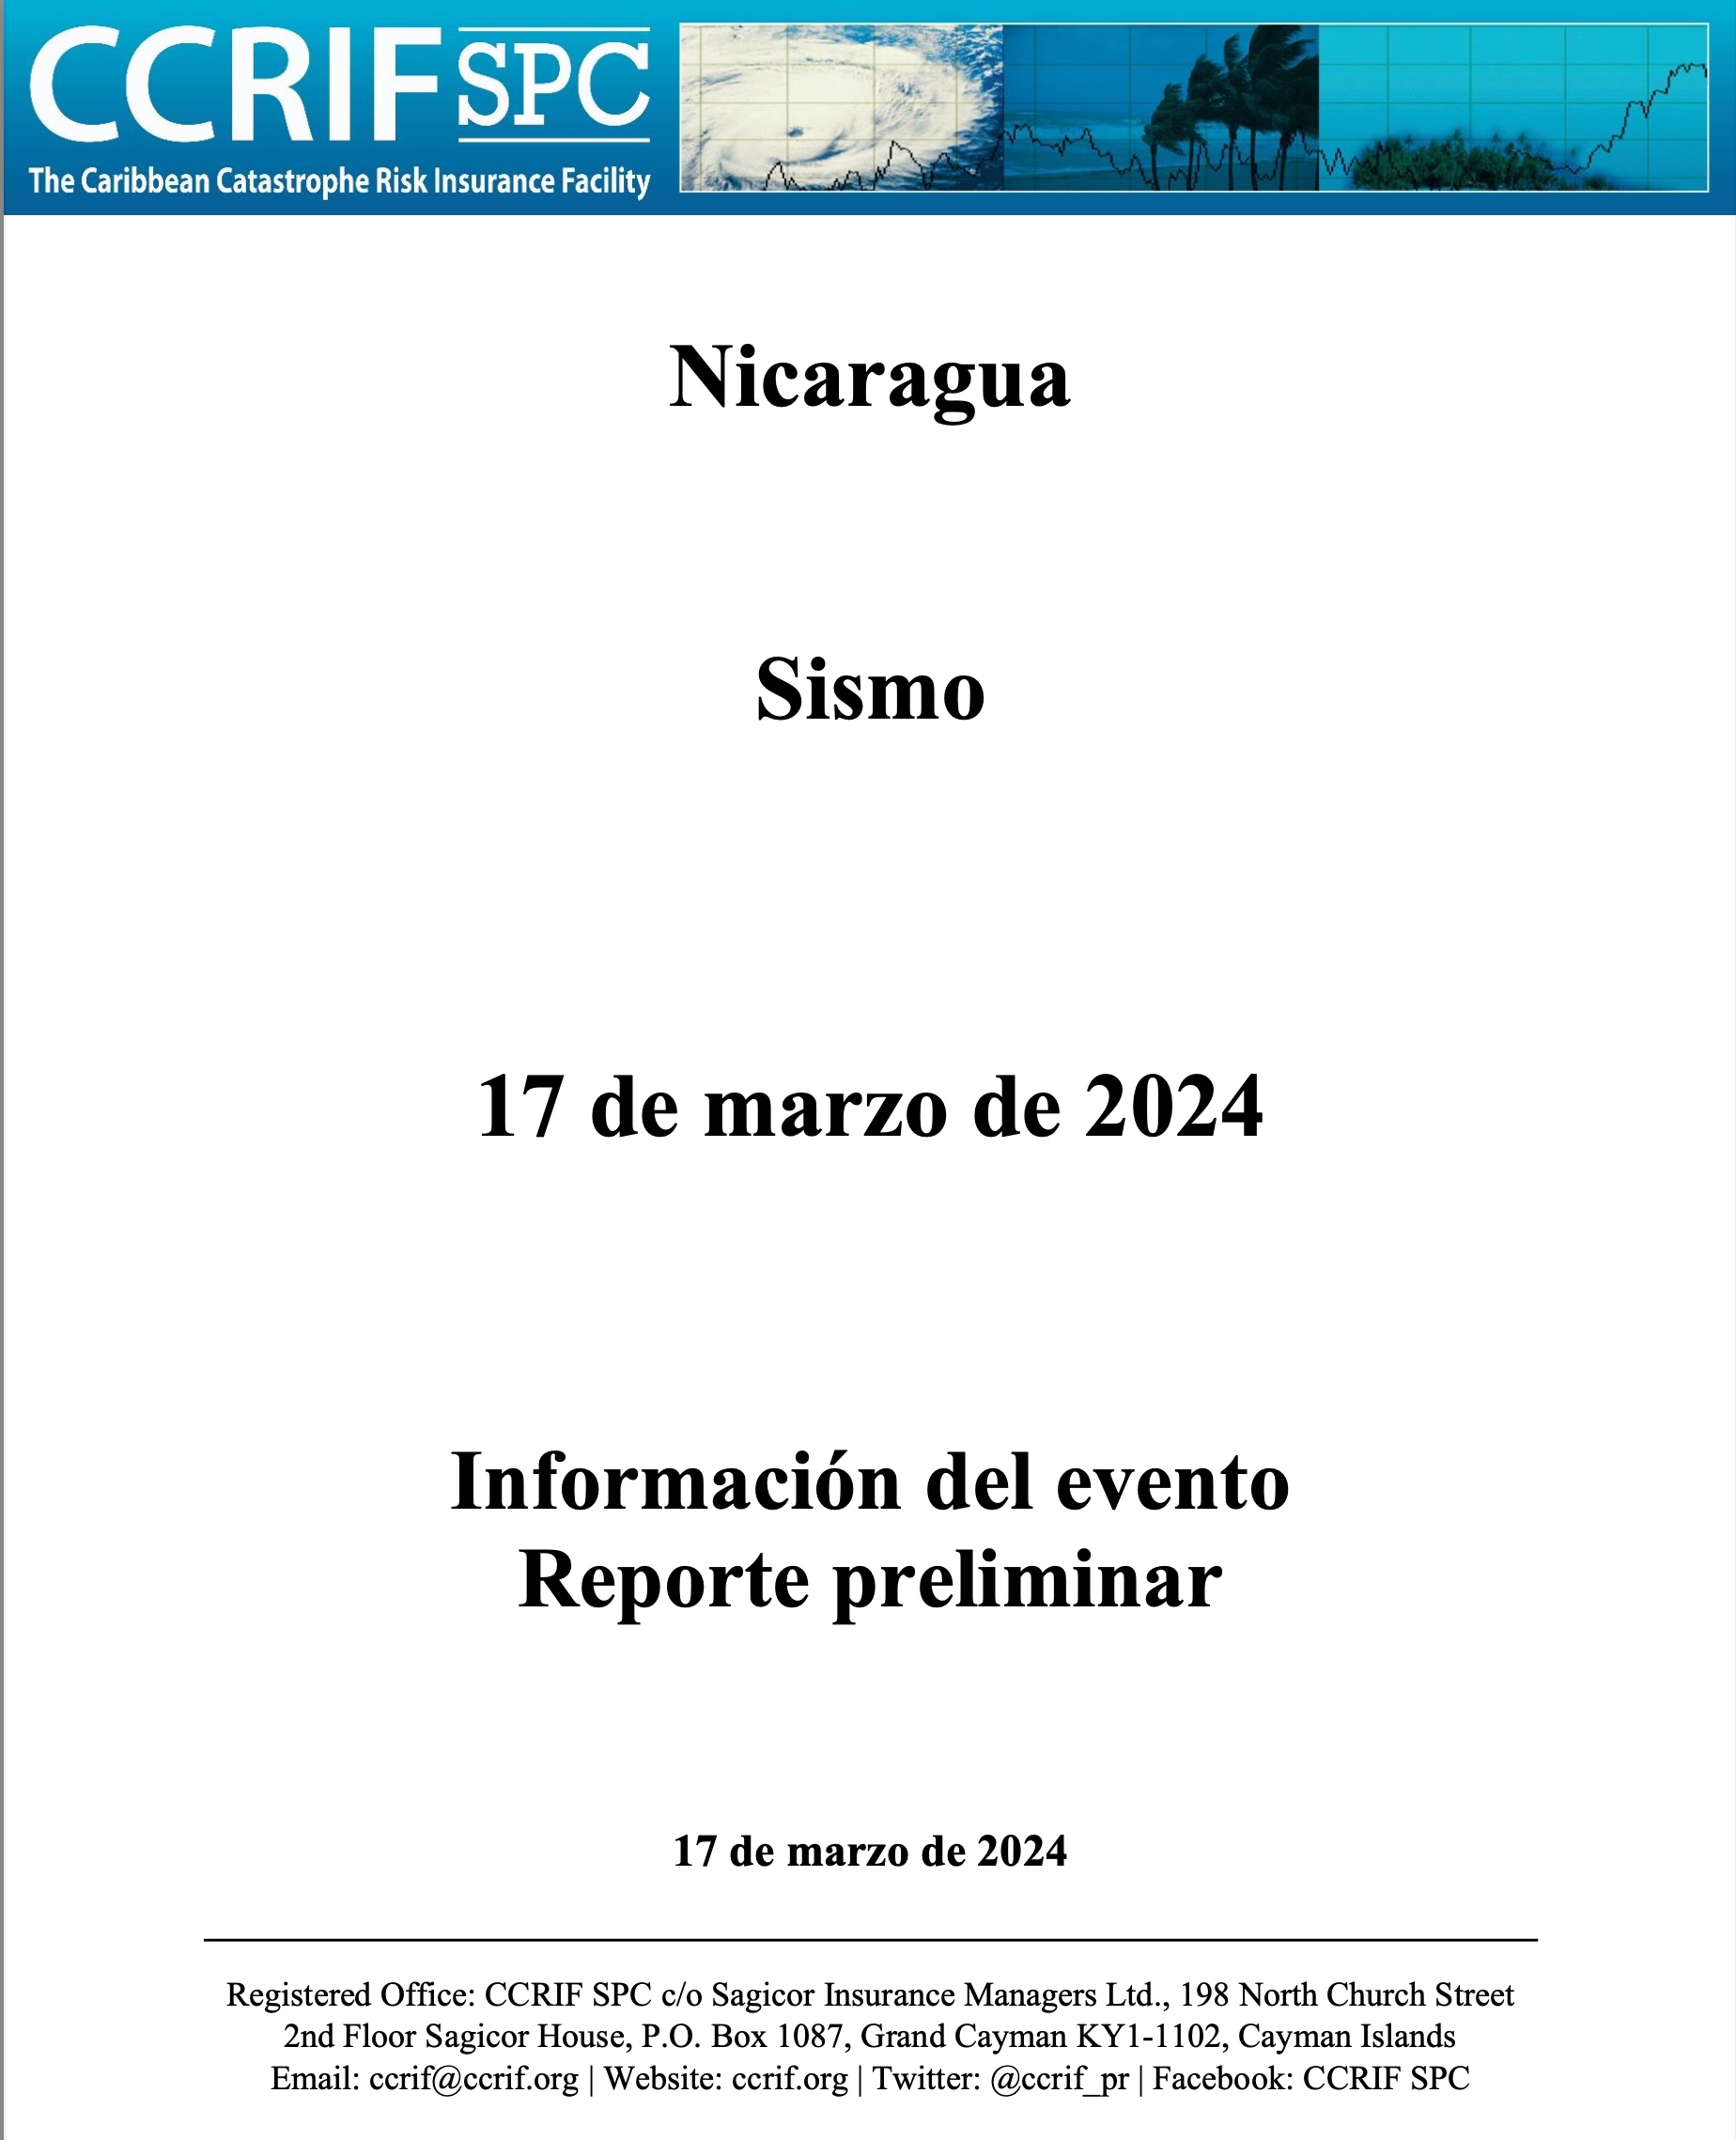 Información del evento Reporte preliminar - Sismo - Nicargua - 17 de marzo de 2024